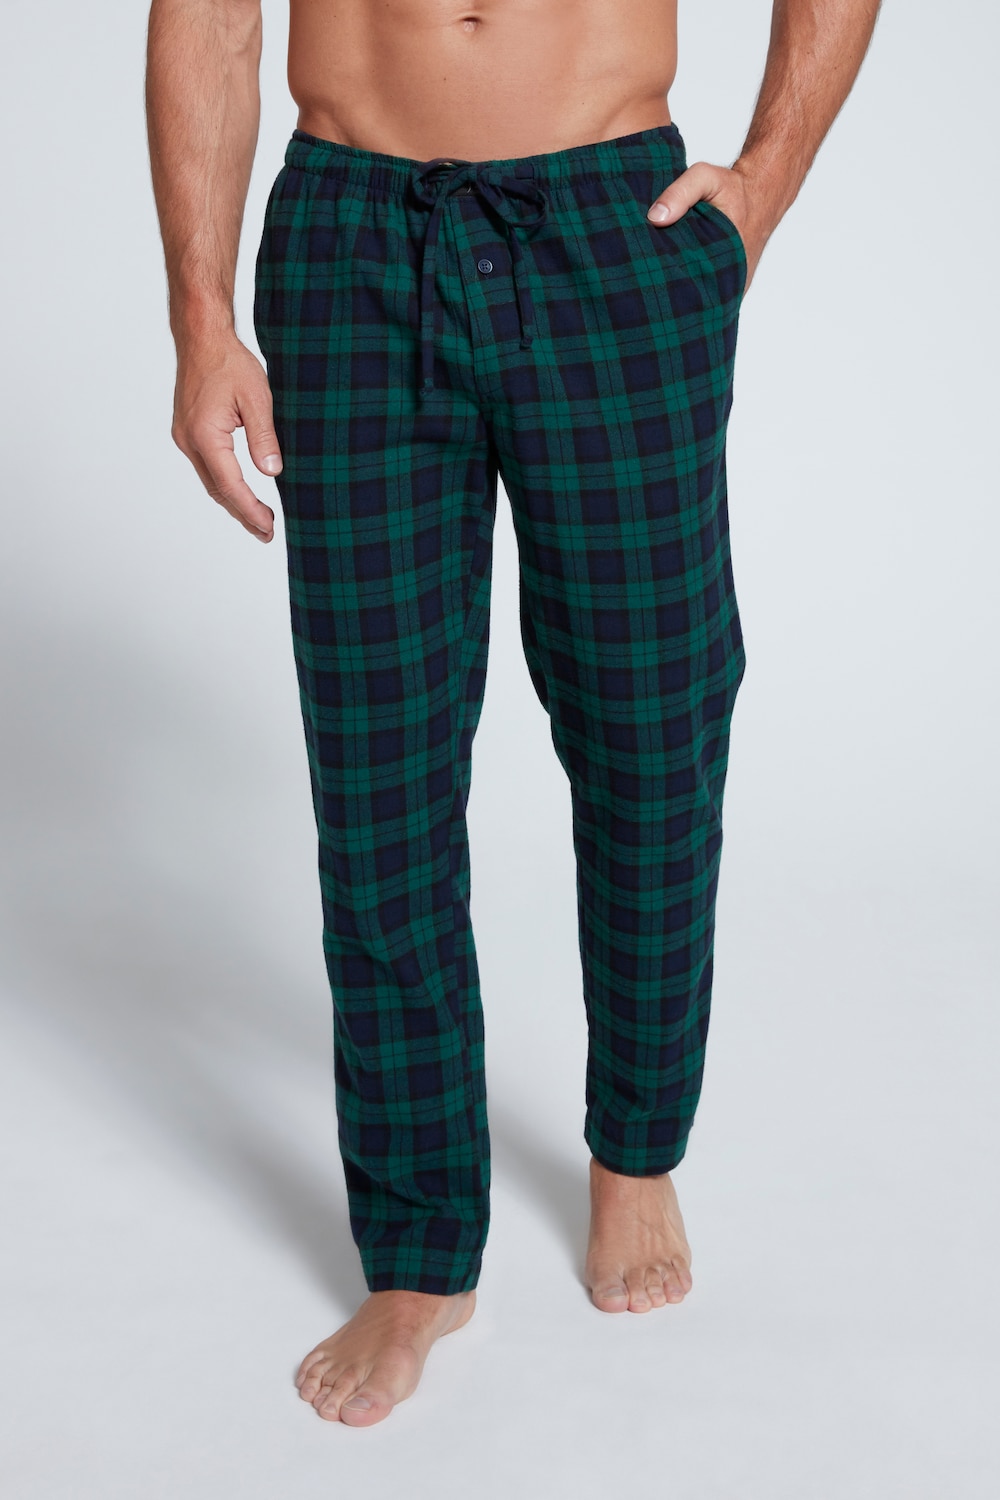 Grote Maten pyjamabroek, Heren, groen, Maat: 5XL, Katoen, JP1880